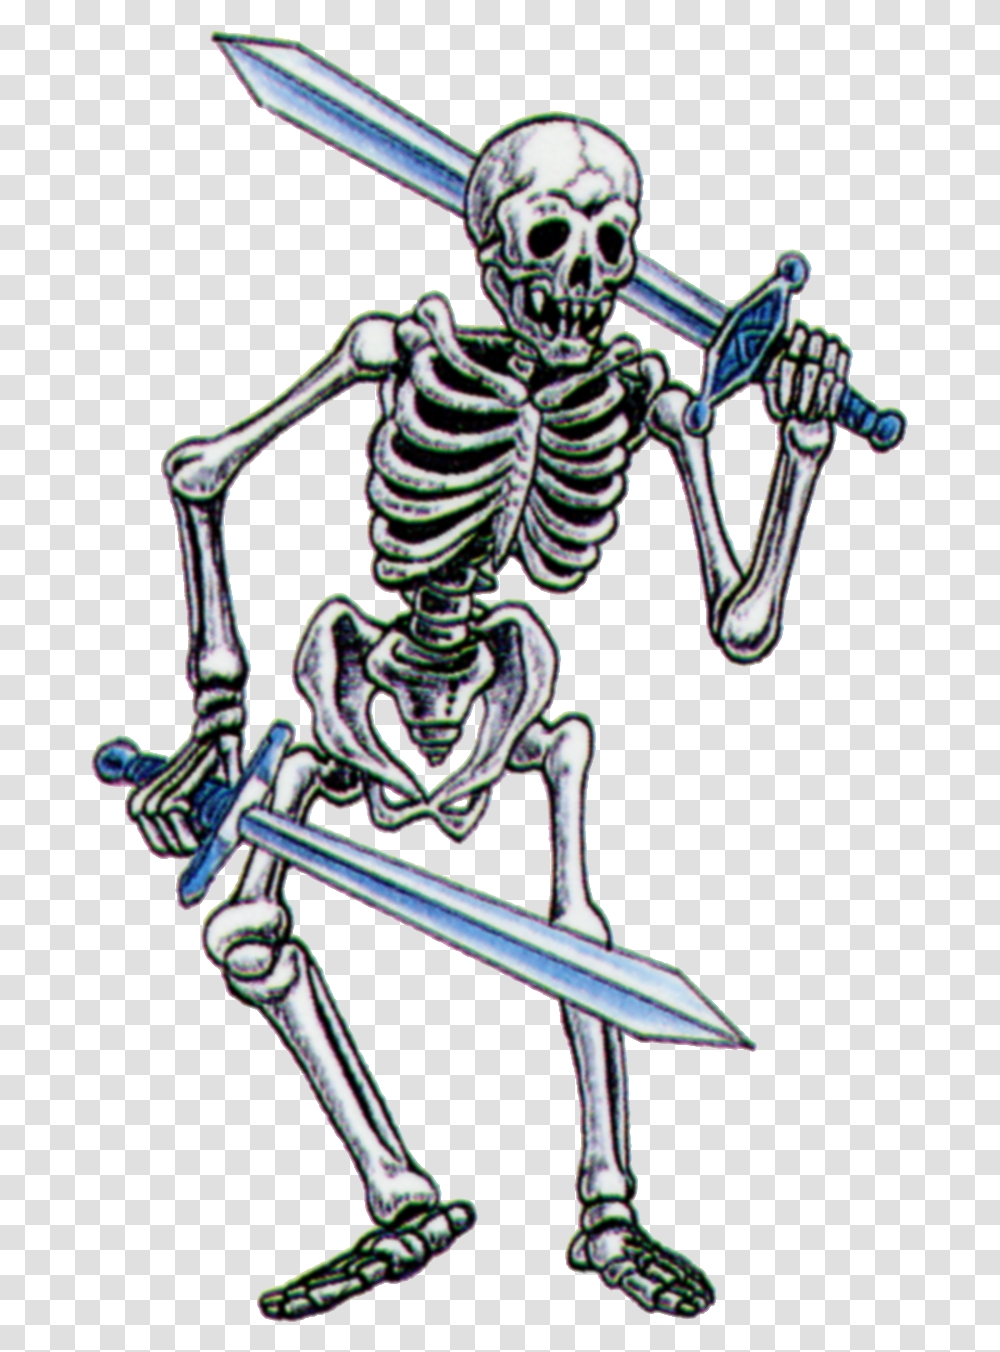 Sxthjqj Legend Of Zelda Stalfos, Skeleton Transparent Png